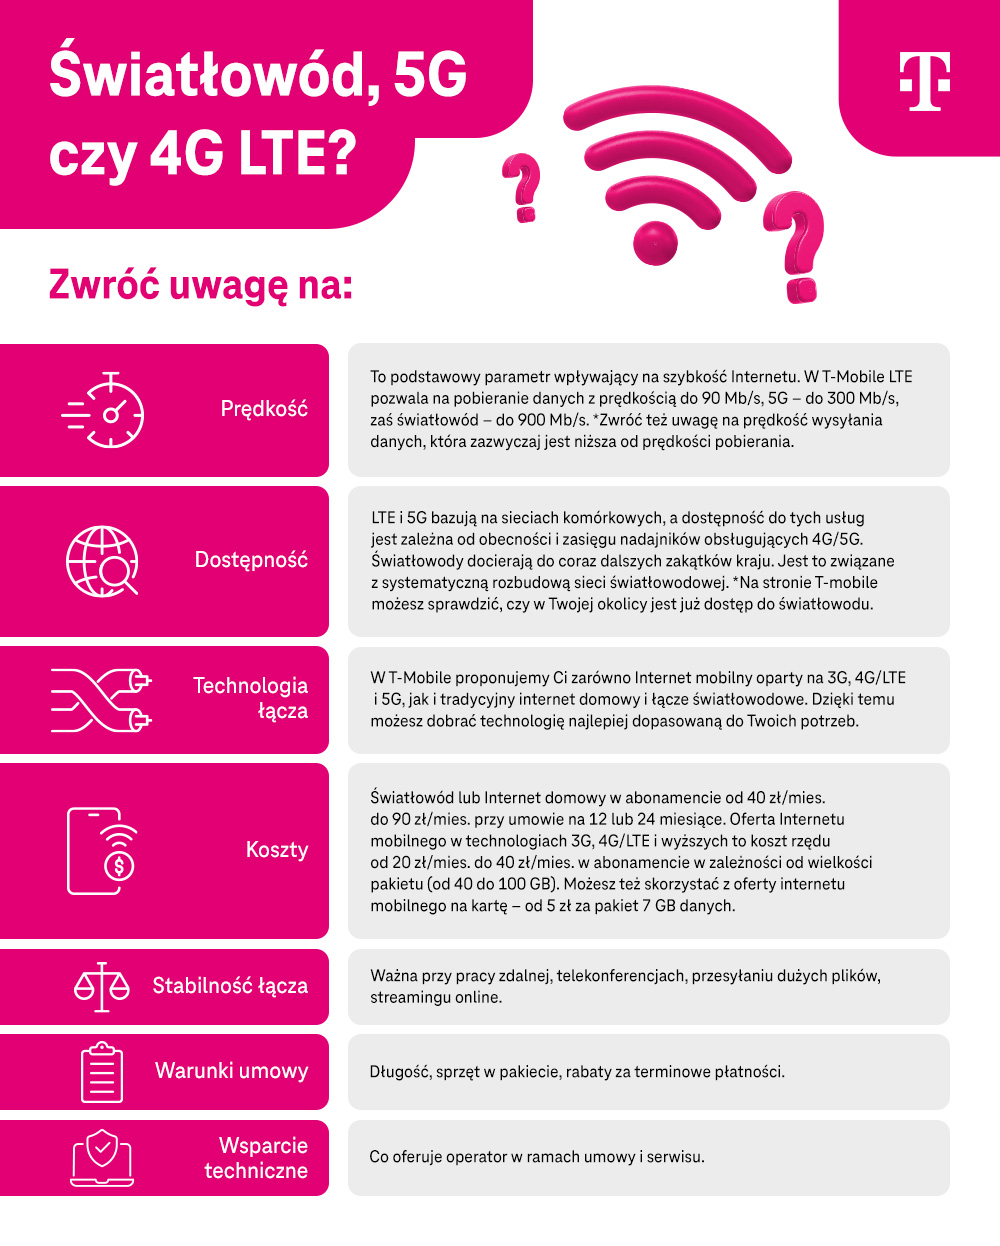 Światłowód, 5G czy 4G LTE - na co zwrócić uwagę - prędkość, dostępność - infografika